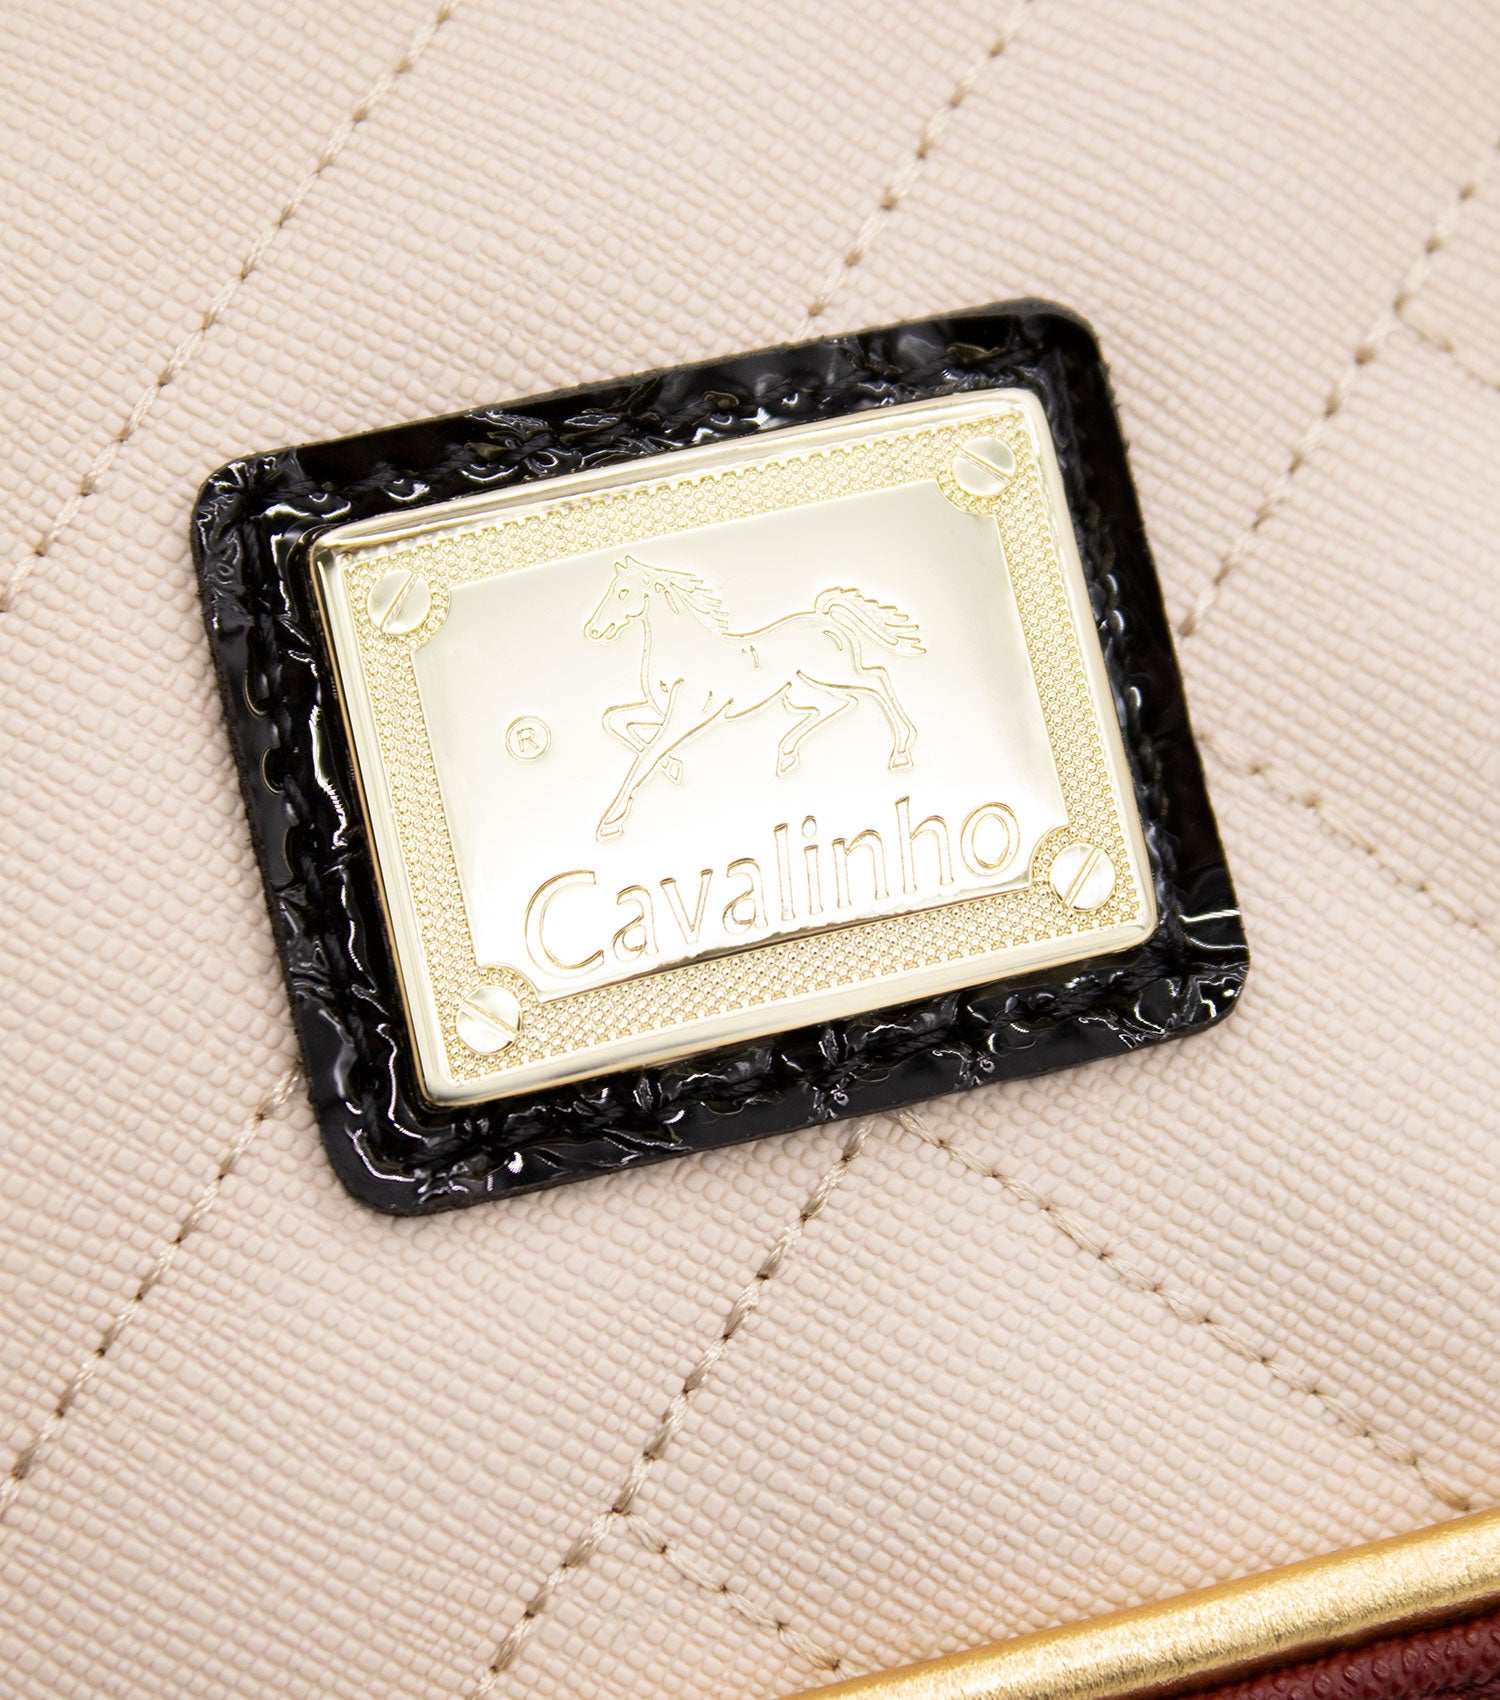 Cavalinho Ciao Bella Mini Handbag - Maroon Multi-Color - 18060243.21_P04